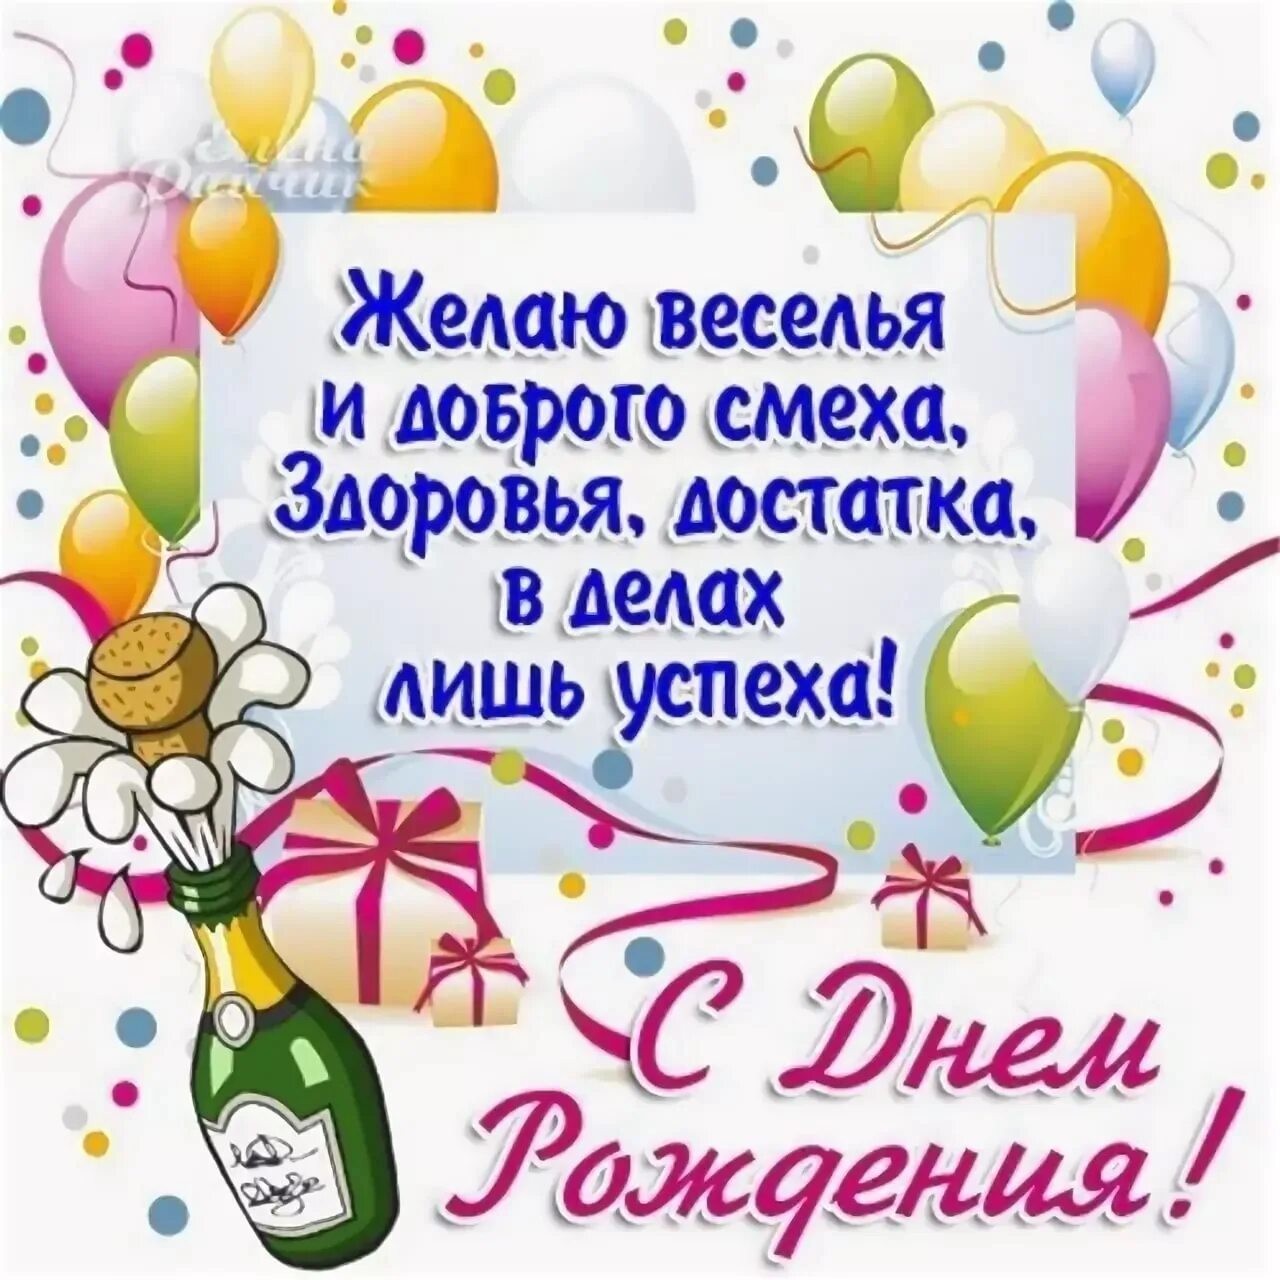 С днем рождения. Поздравления с днём рождения. Поздравлениясднёмрождения. С днём рождения другу. Поздравление с днем рождения на таджикском